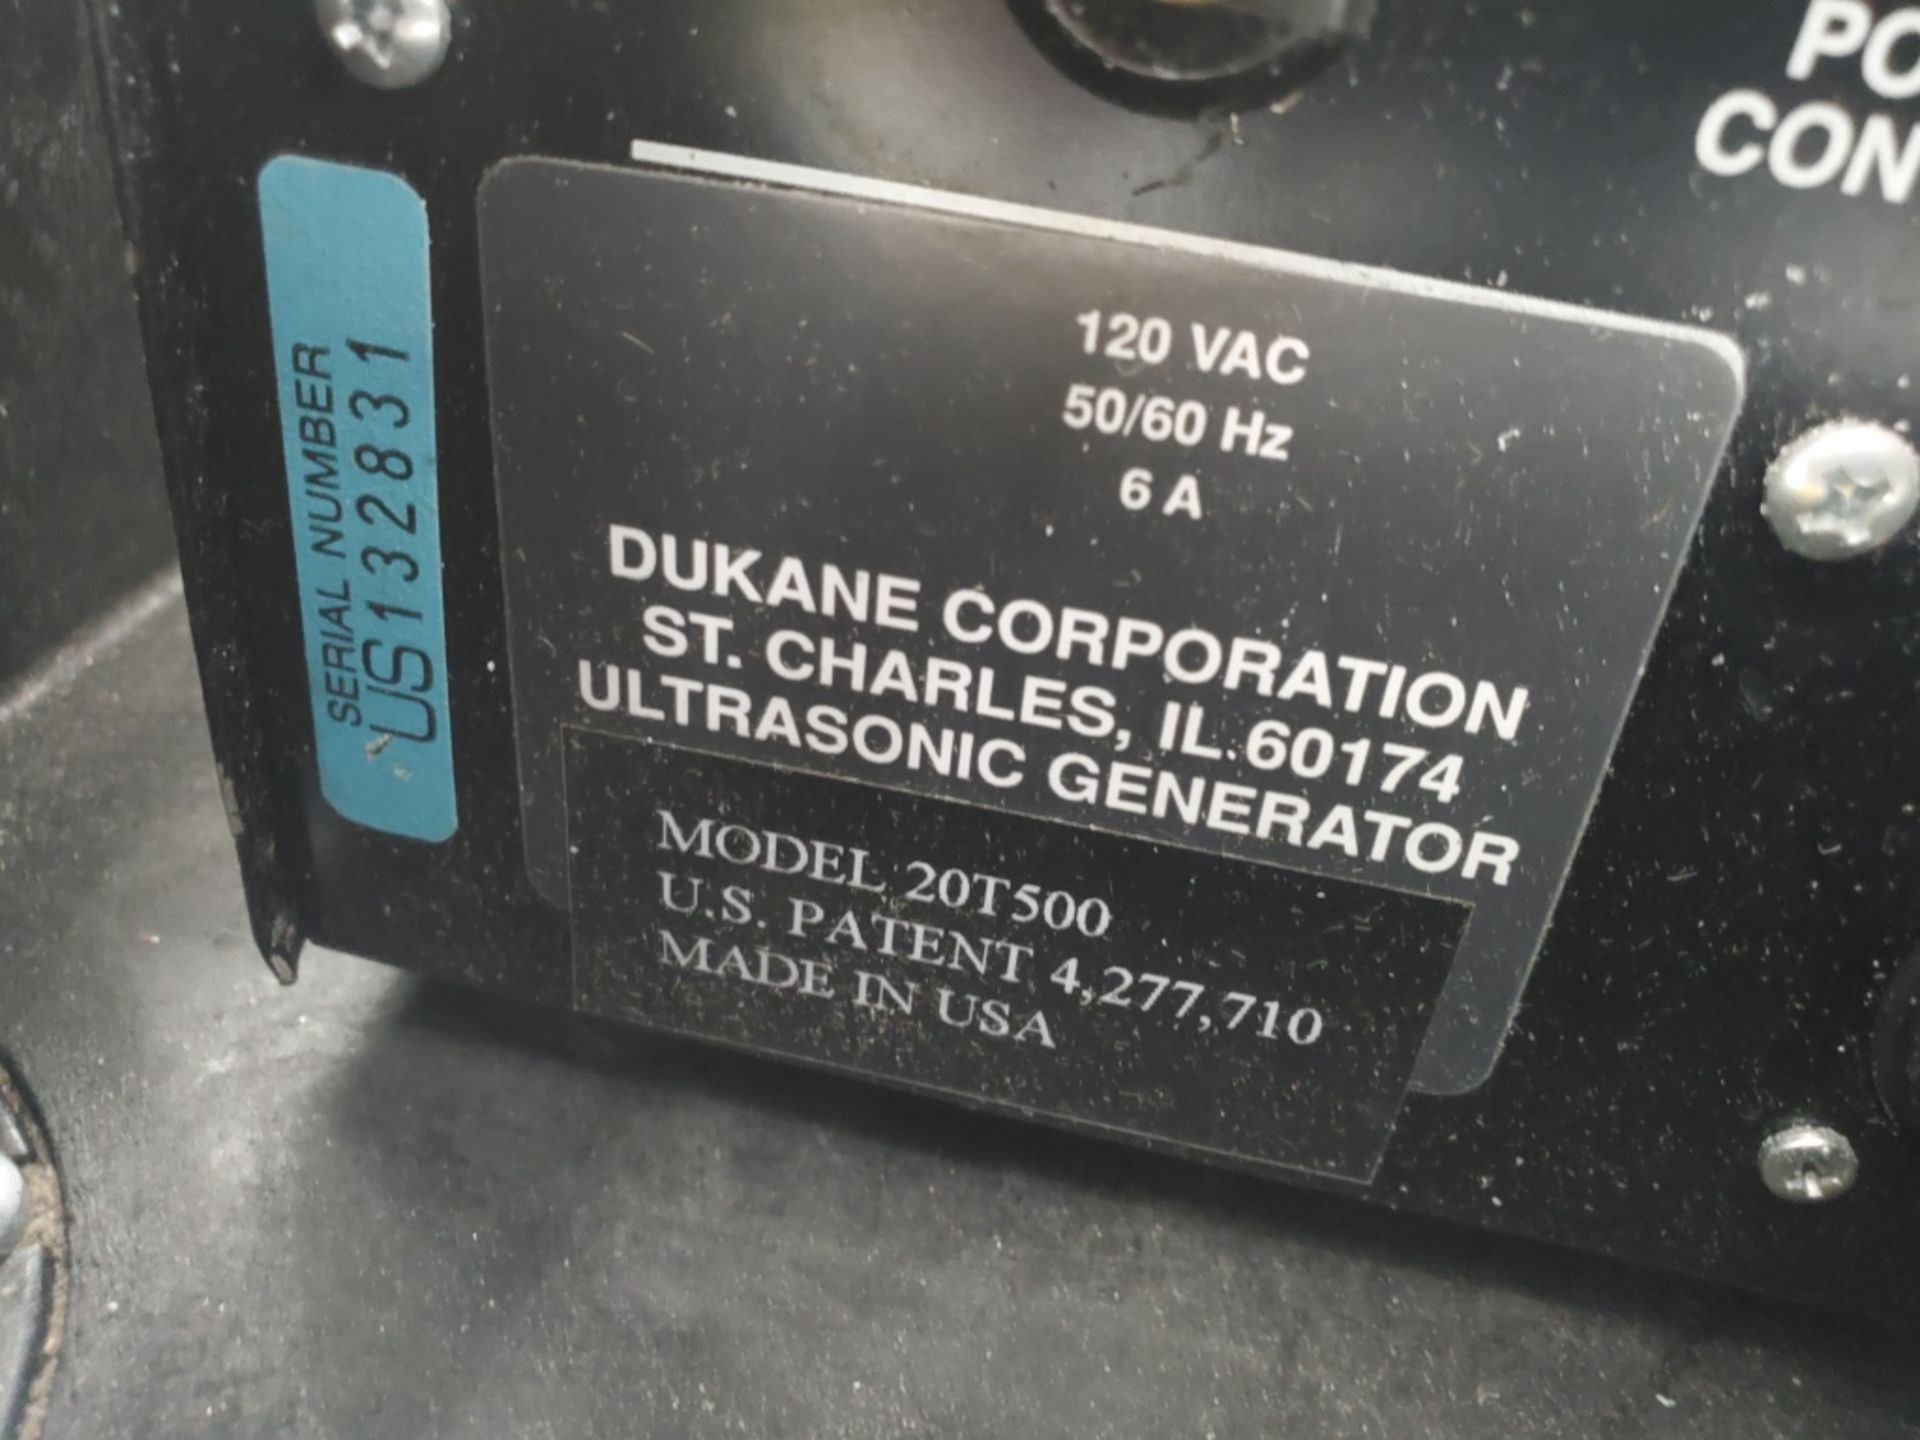 Dukane Model 20T500 Ultrasonic Generator w/ Ultrasonic Welding Head and Rubbermaid 2-Tier Tool Cart - Image 3 of 6